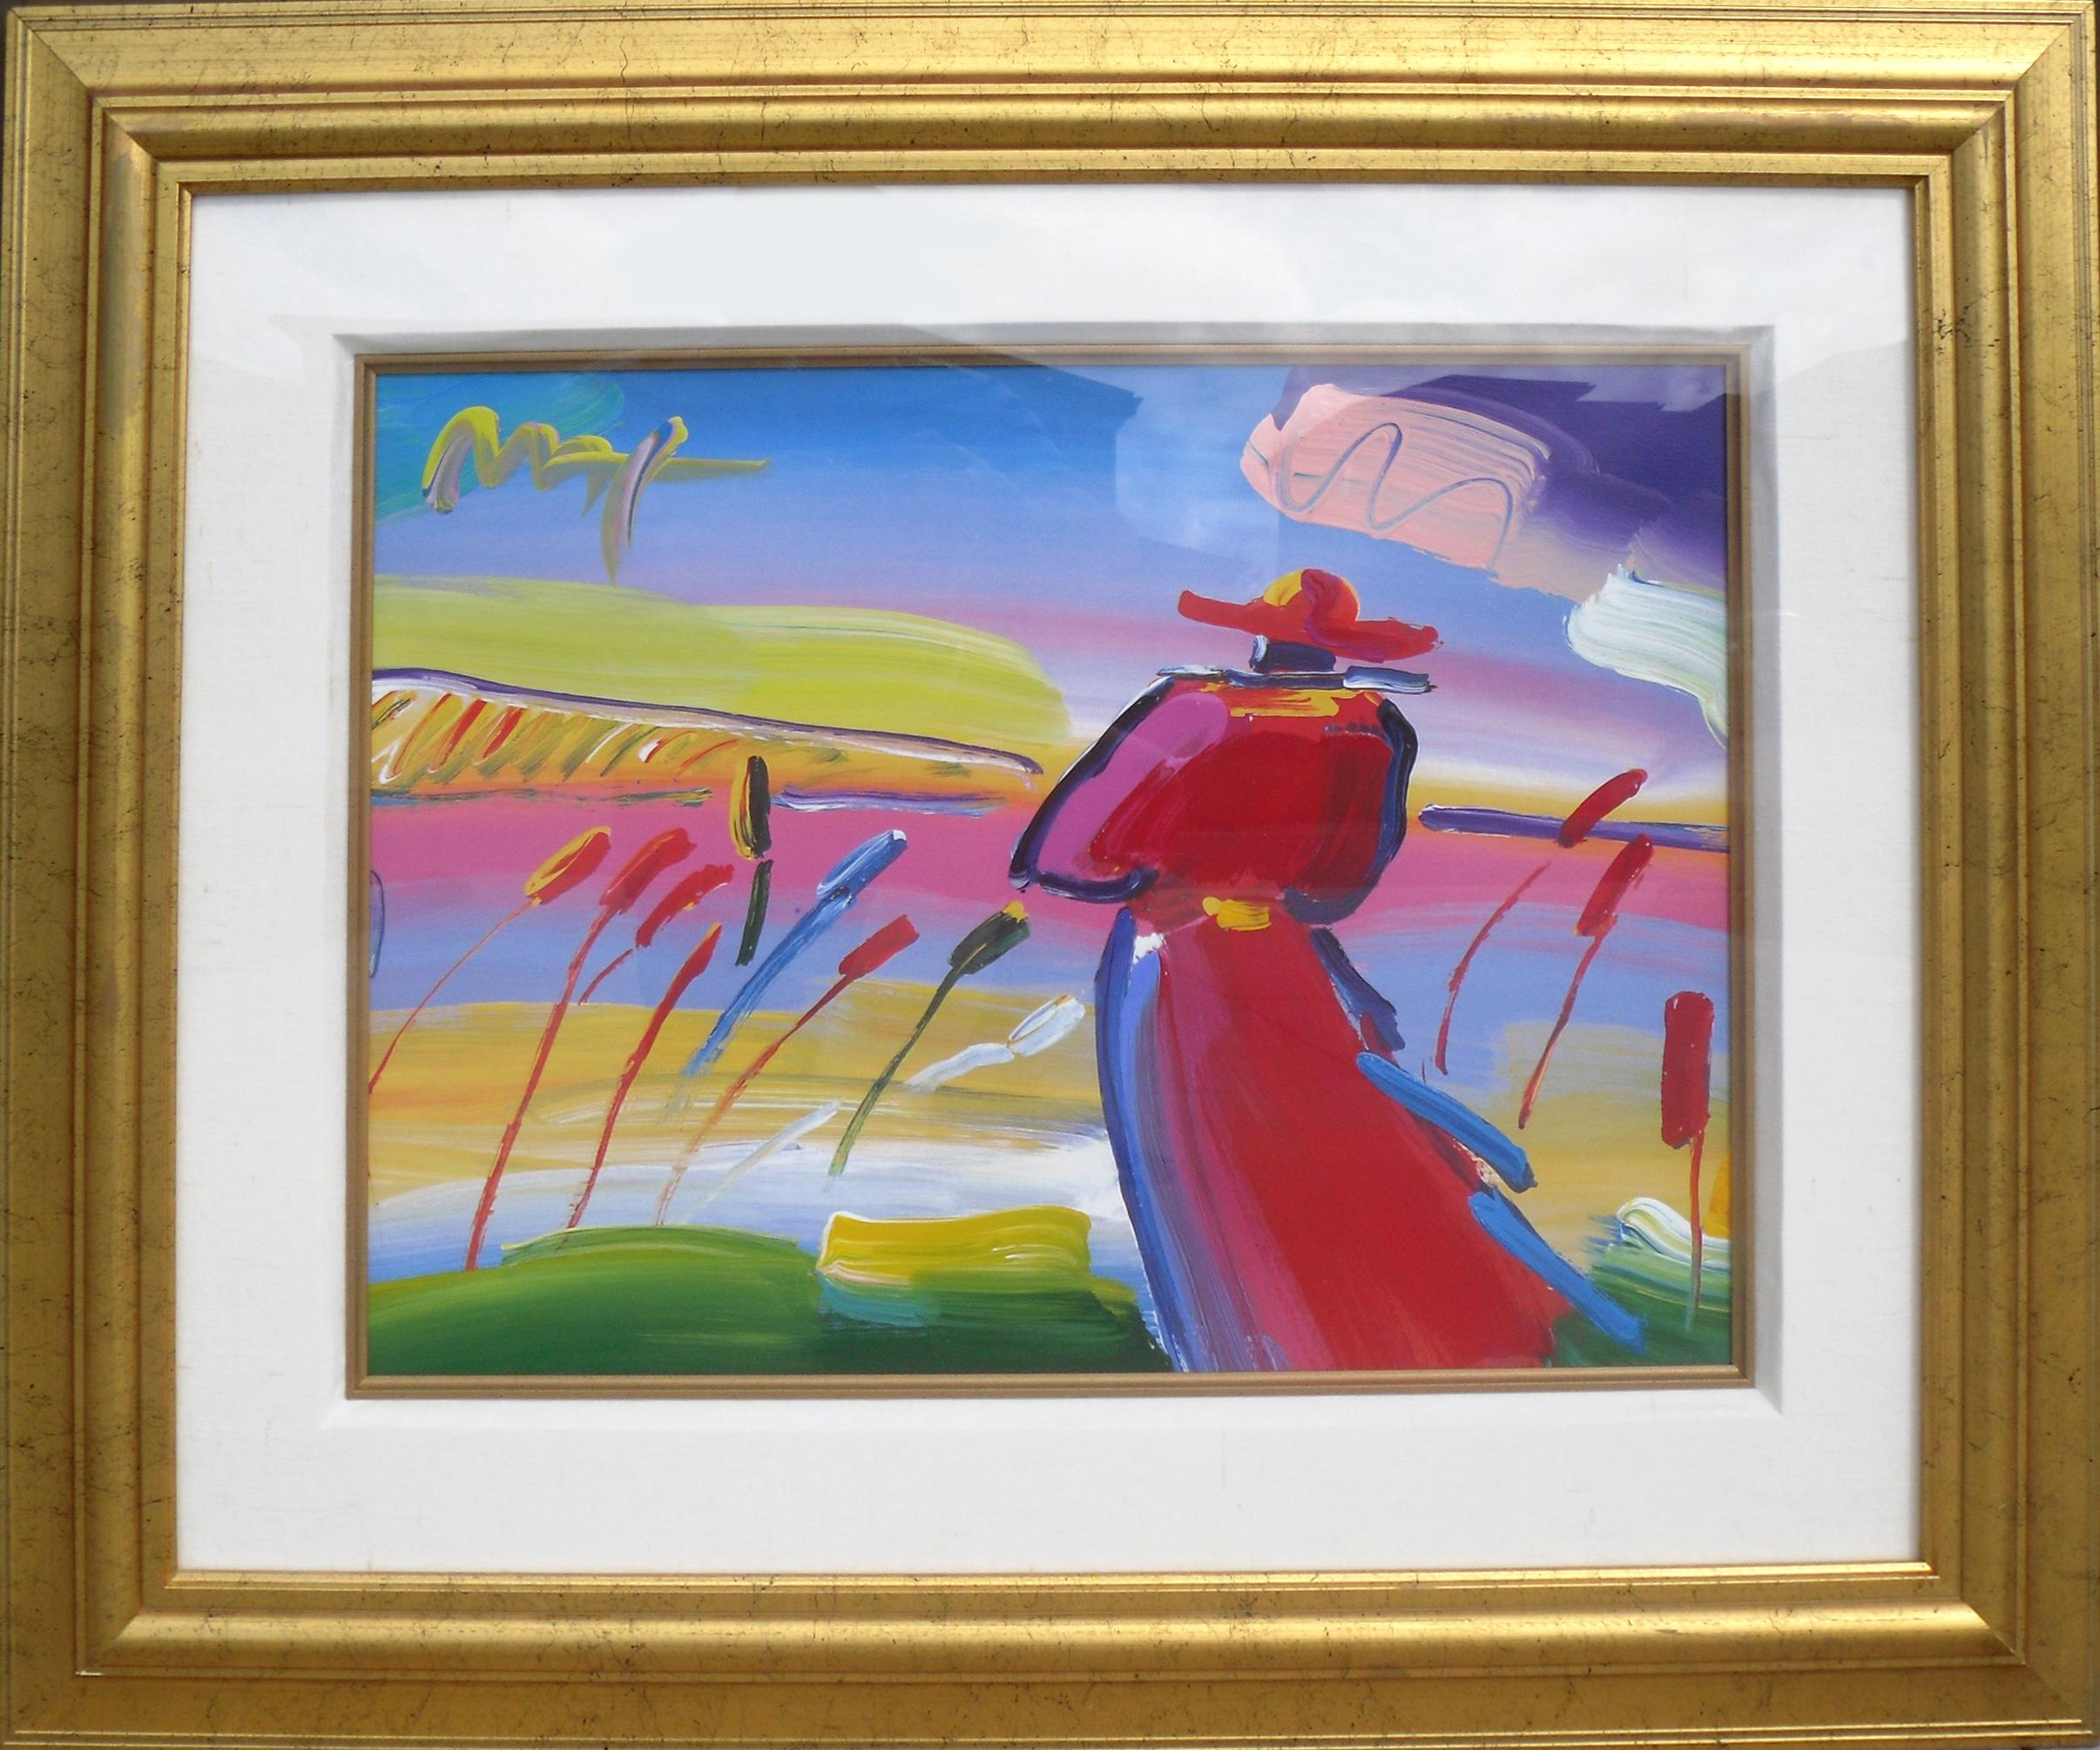 Walking in Reeds von Peter Max, deutsch/amerikanisch (1937)
Datum: 1999
Mischtechnik mit Acrylmalerei auf Lithographie, oben links signiert
Größe: 14 x 17 Zoll (35,56 x 43,18 cm)
Rahmengröße: 30 x 35 Zoll